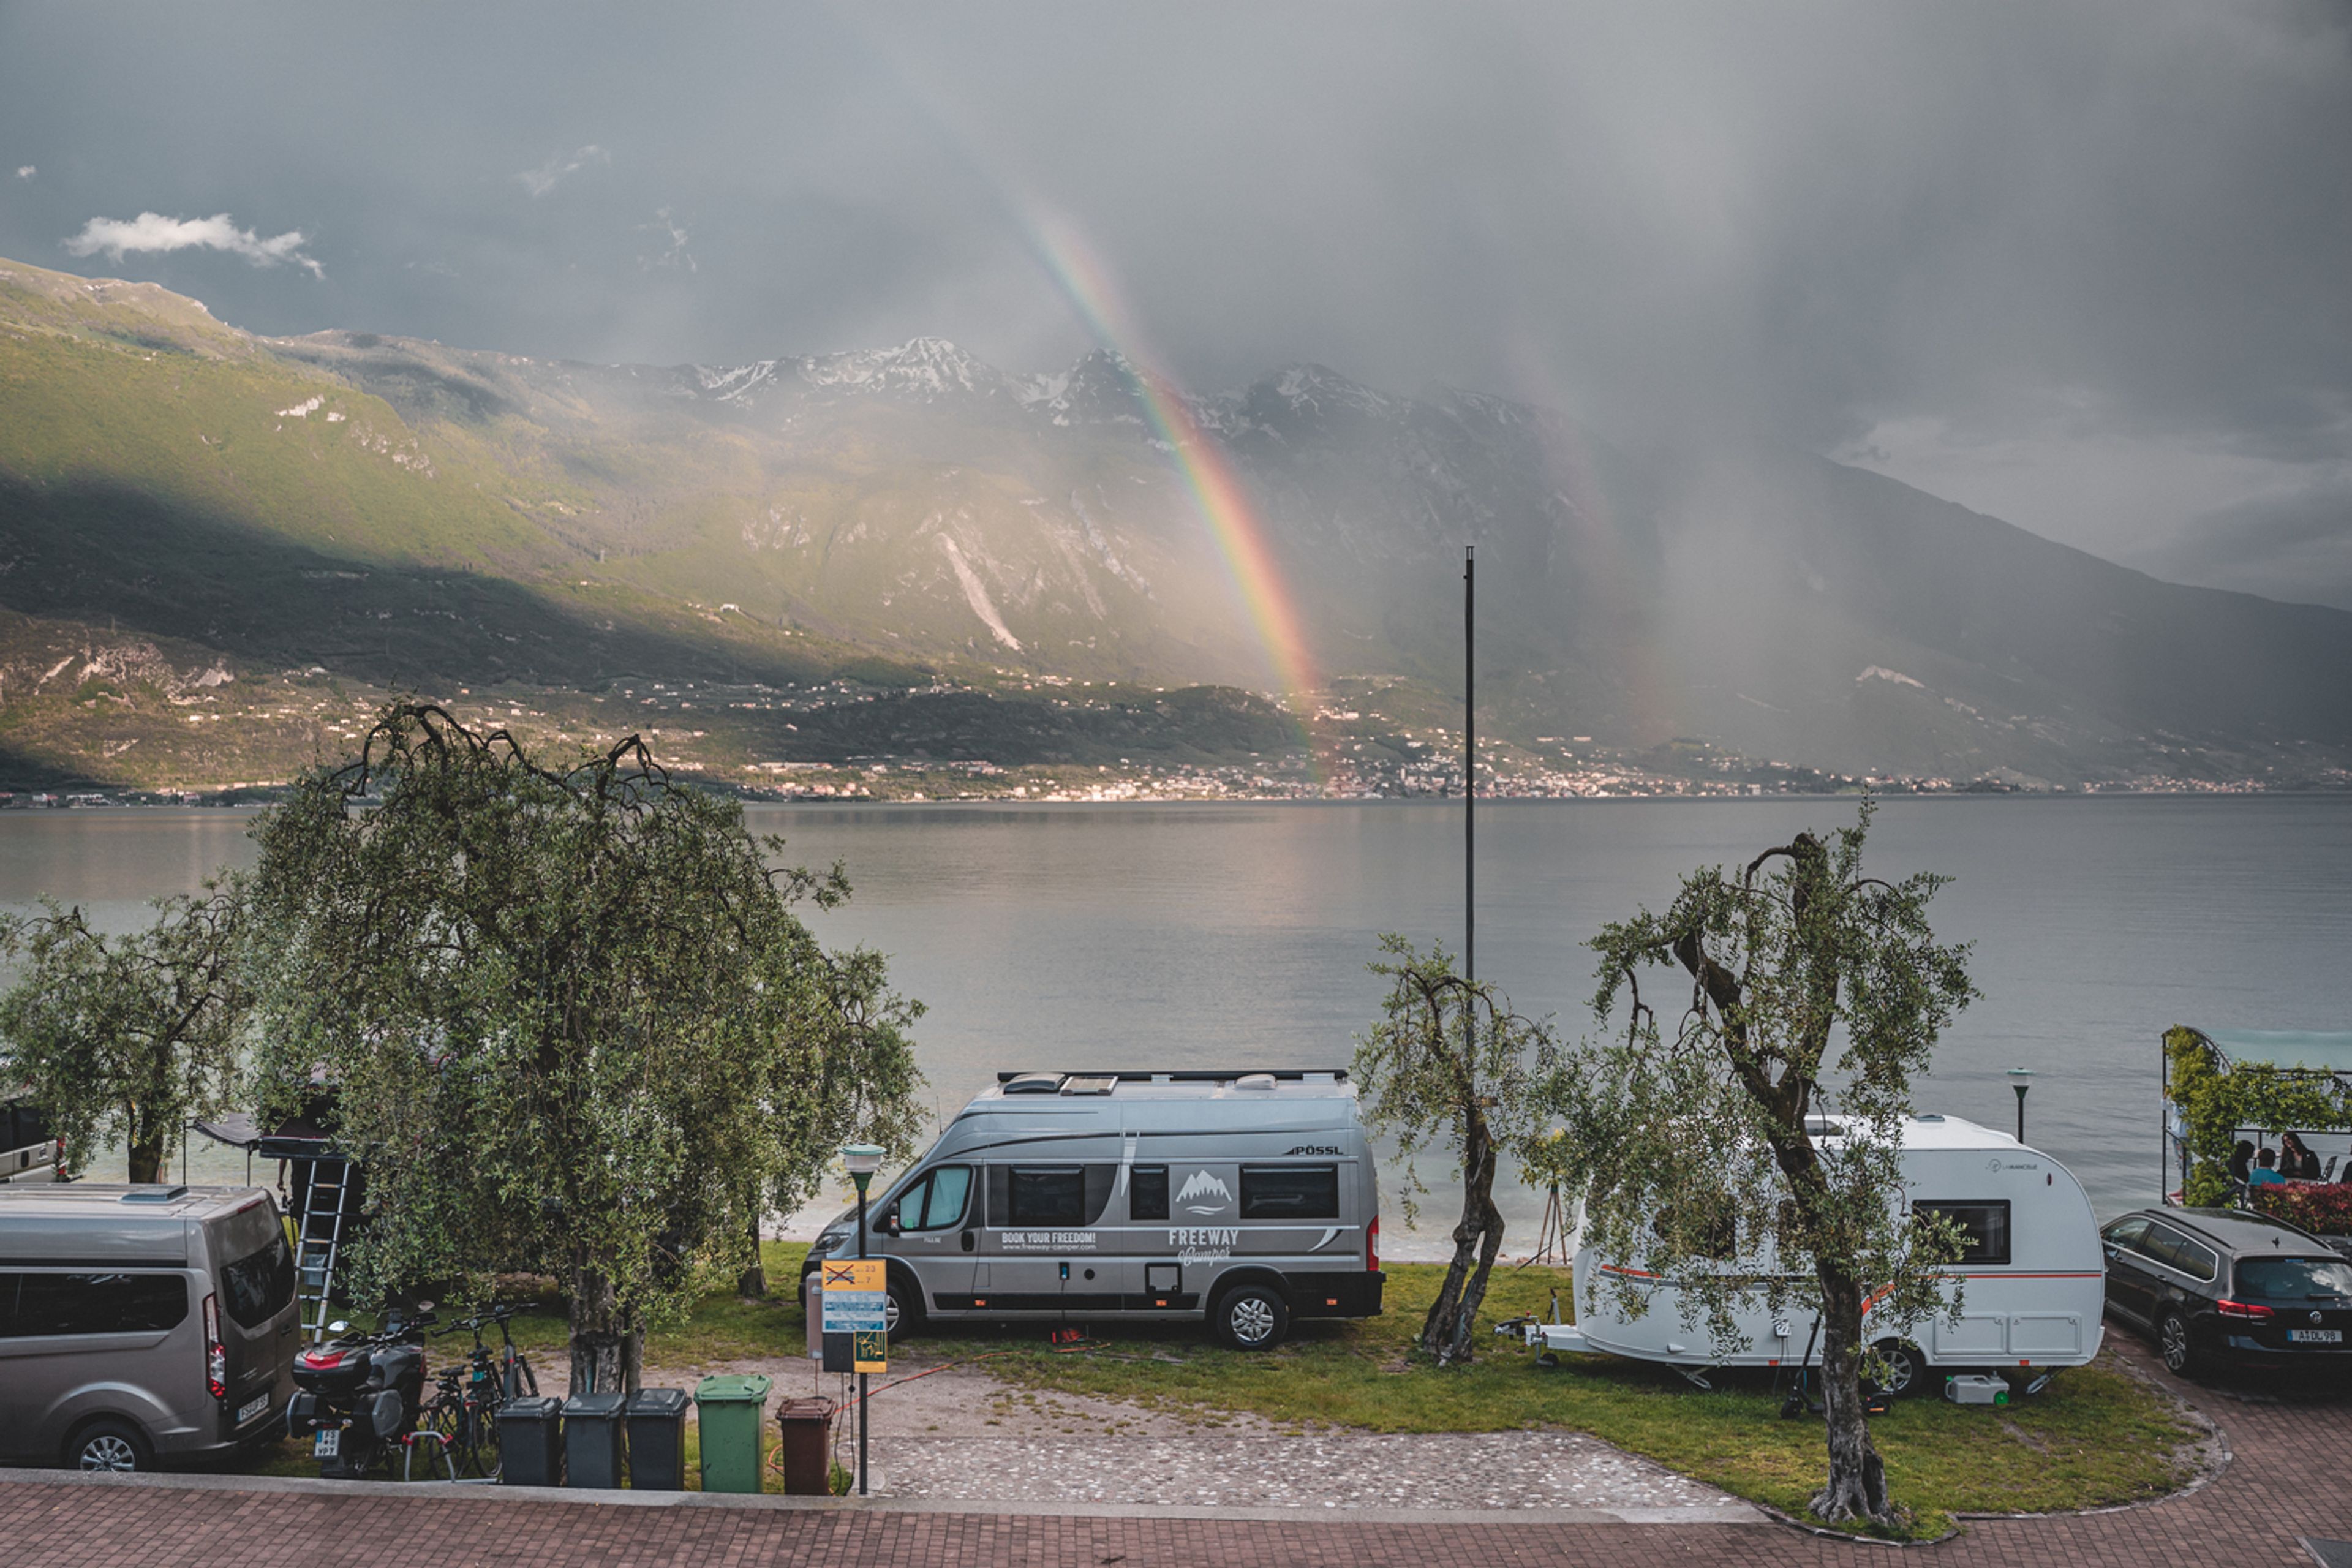 Camper in un campeggio direttamente sul lago di Garda. Sullo sfondo si vede un arcobaleno.